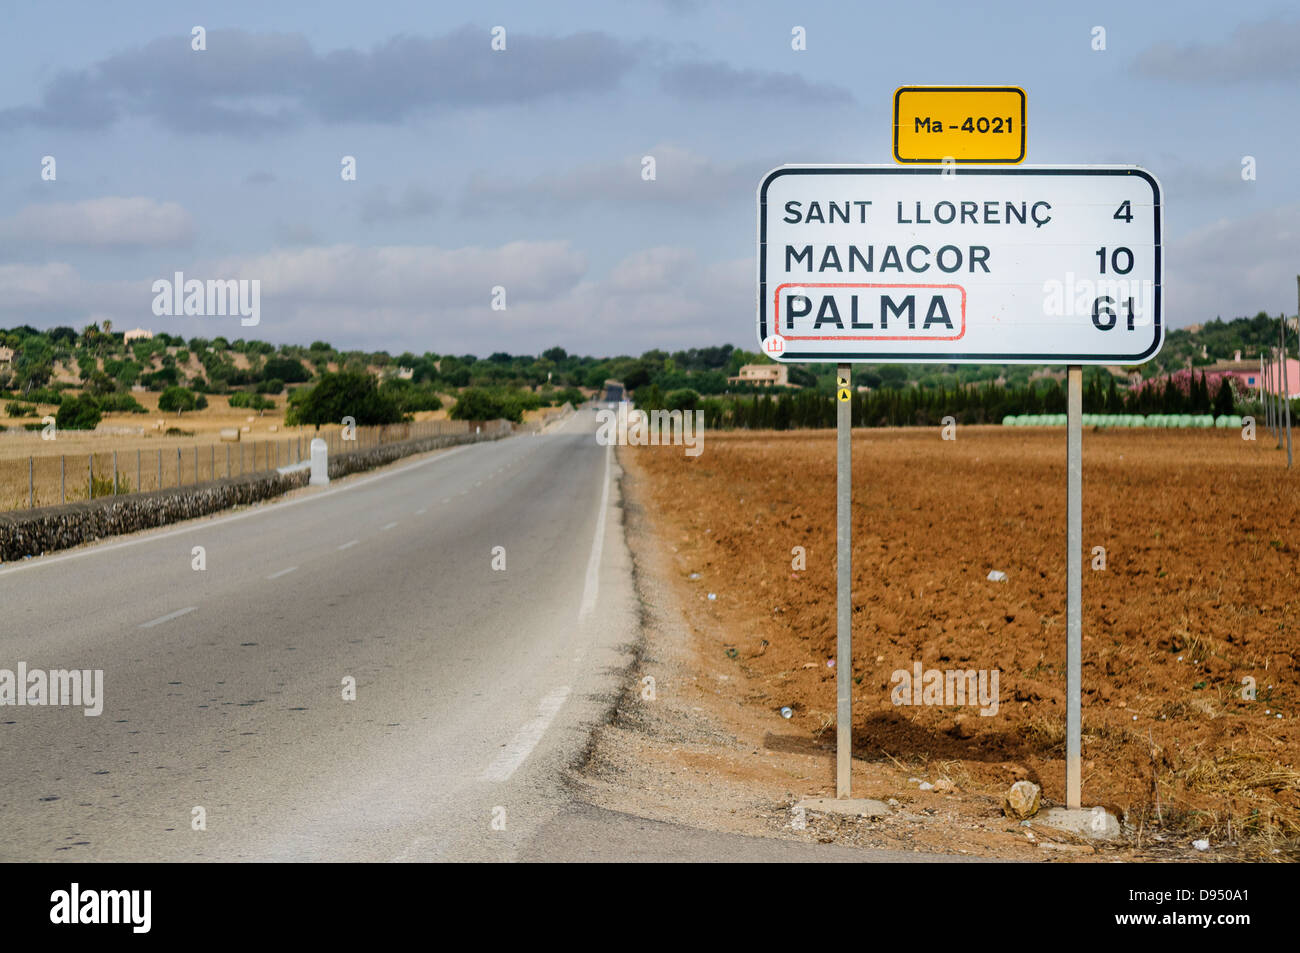 Segno su una strada di Mallorca (Maiorca) a Sant Llorenç, Manacor e Palma Foto Stock